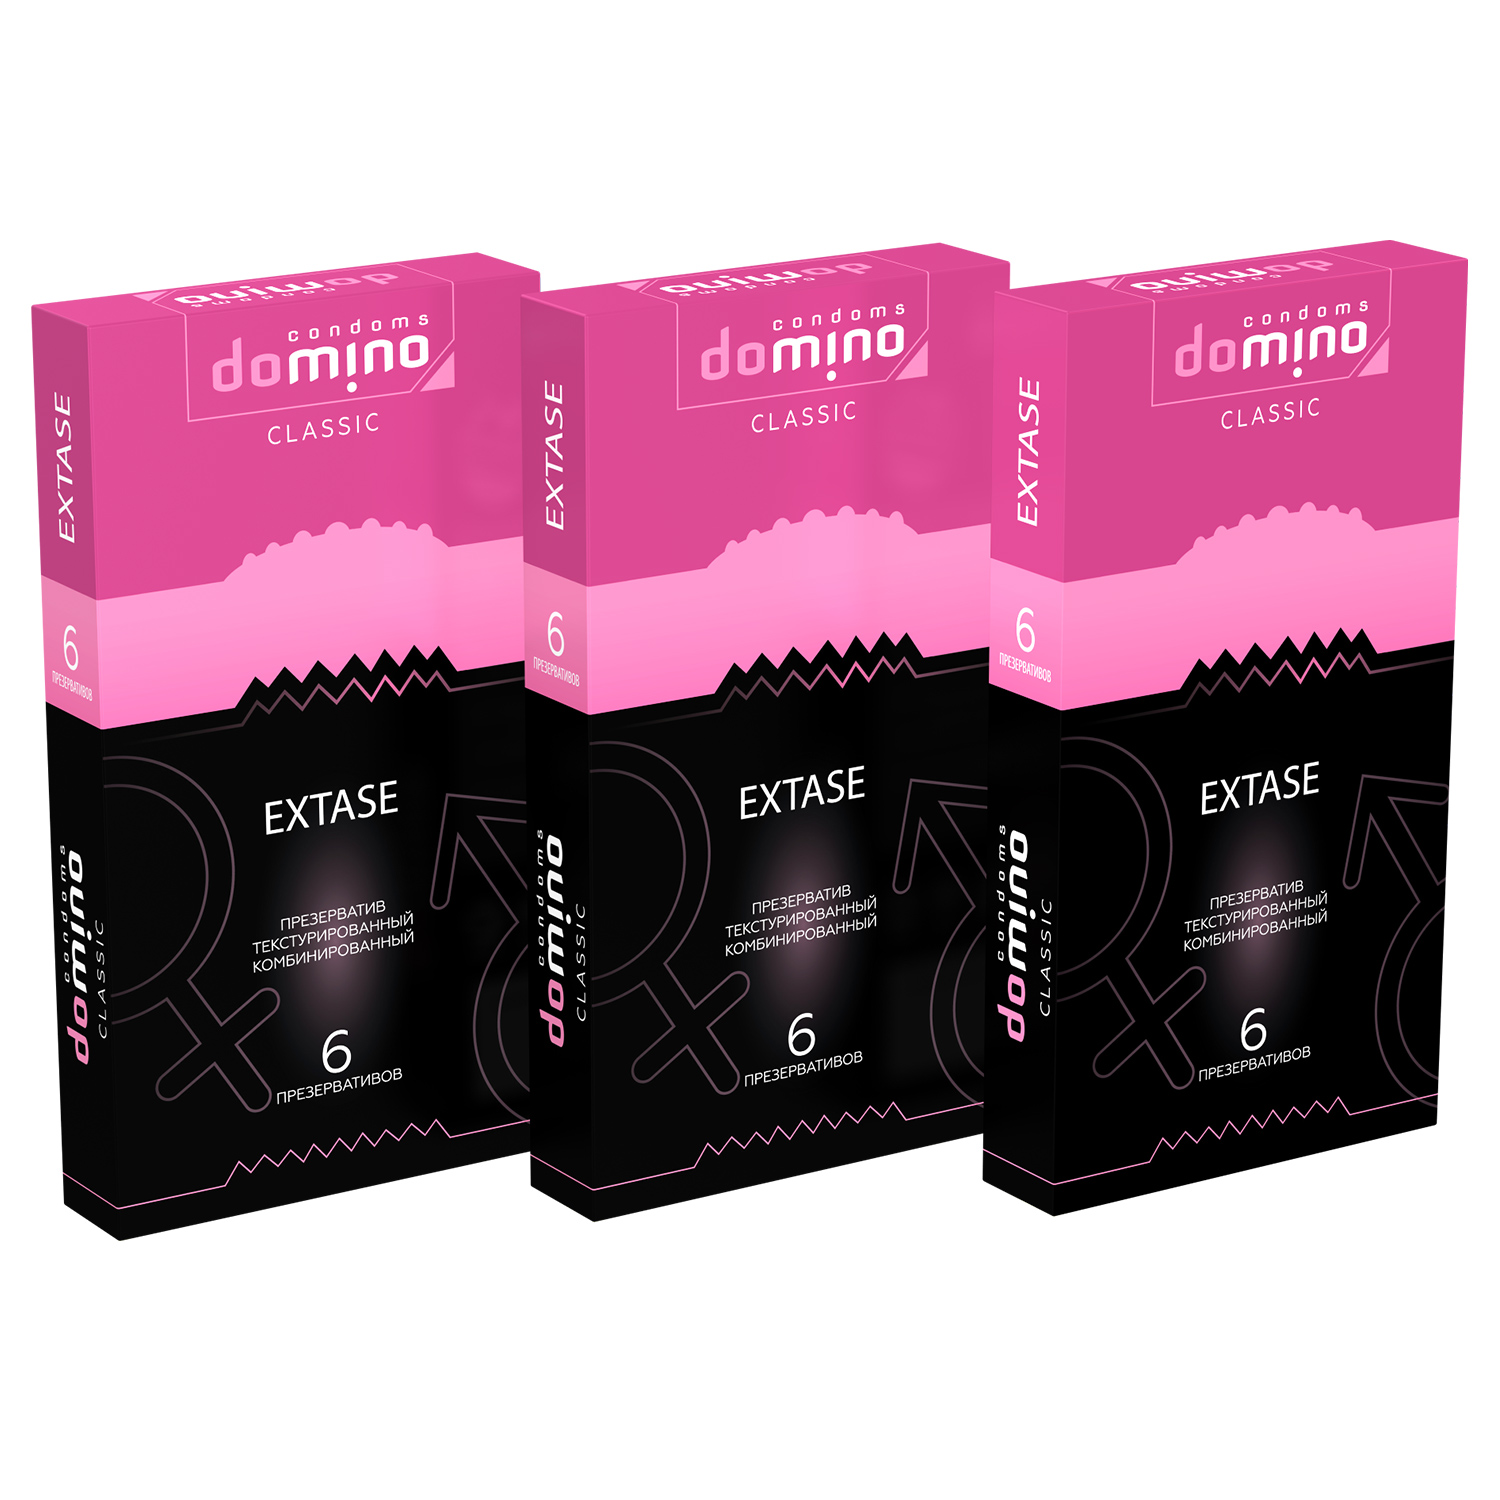 Презервативы Domino Classic Extase 6 шт комплект из 3 пачек